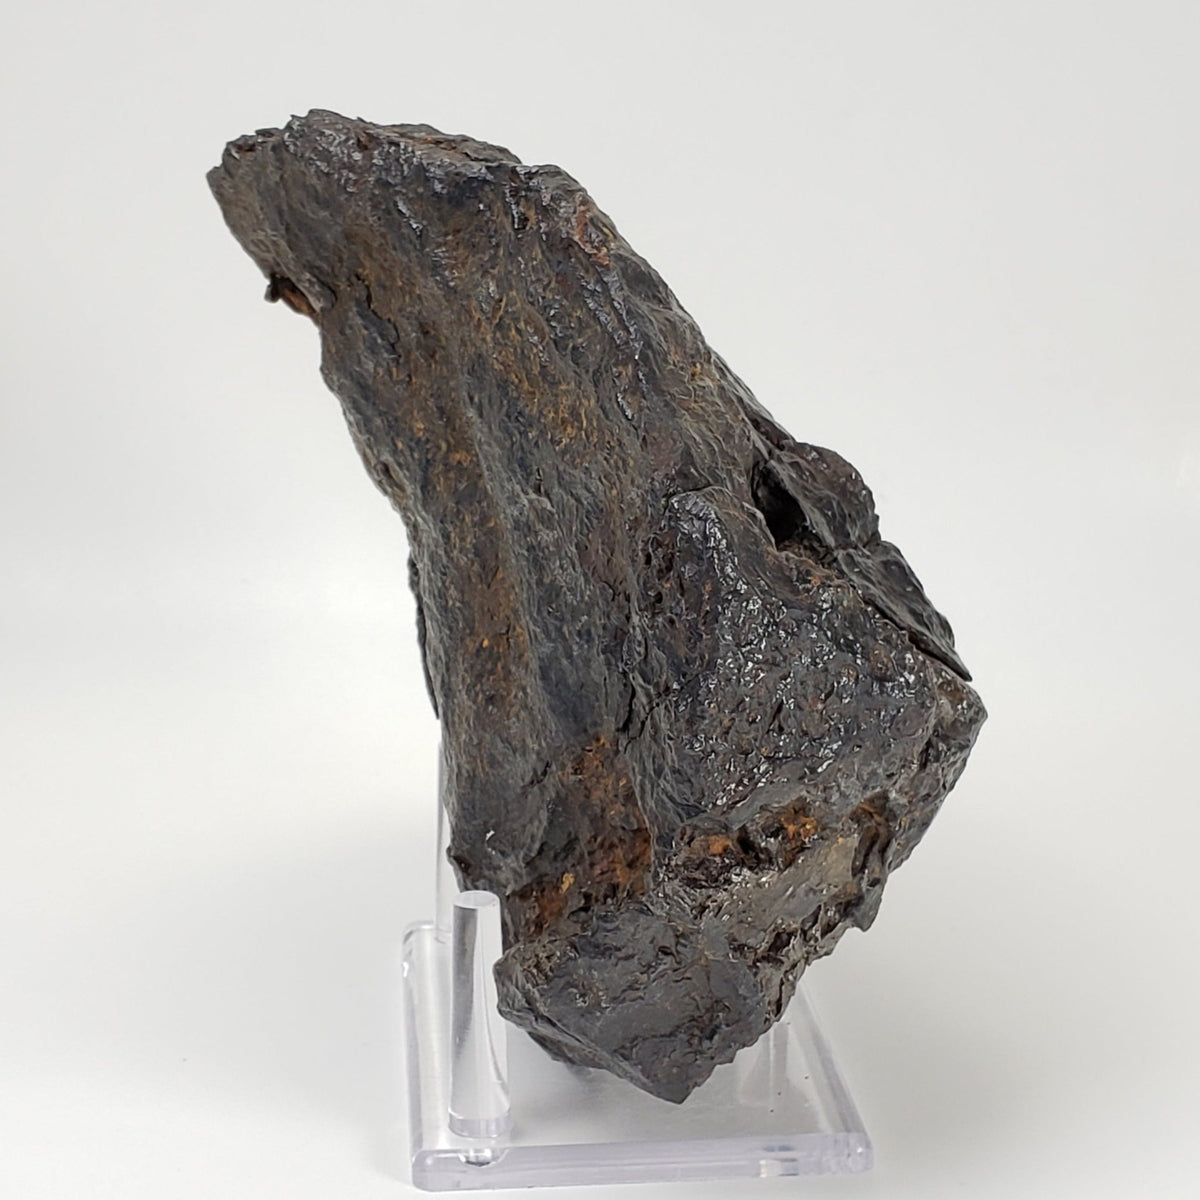 Nantan Meteorite | 4.288 KG | IAB-MG Iron | Guangxi China